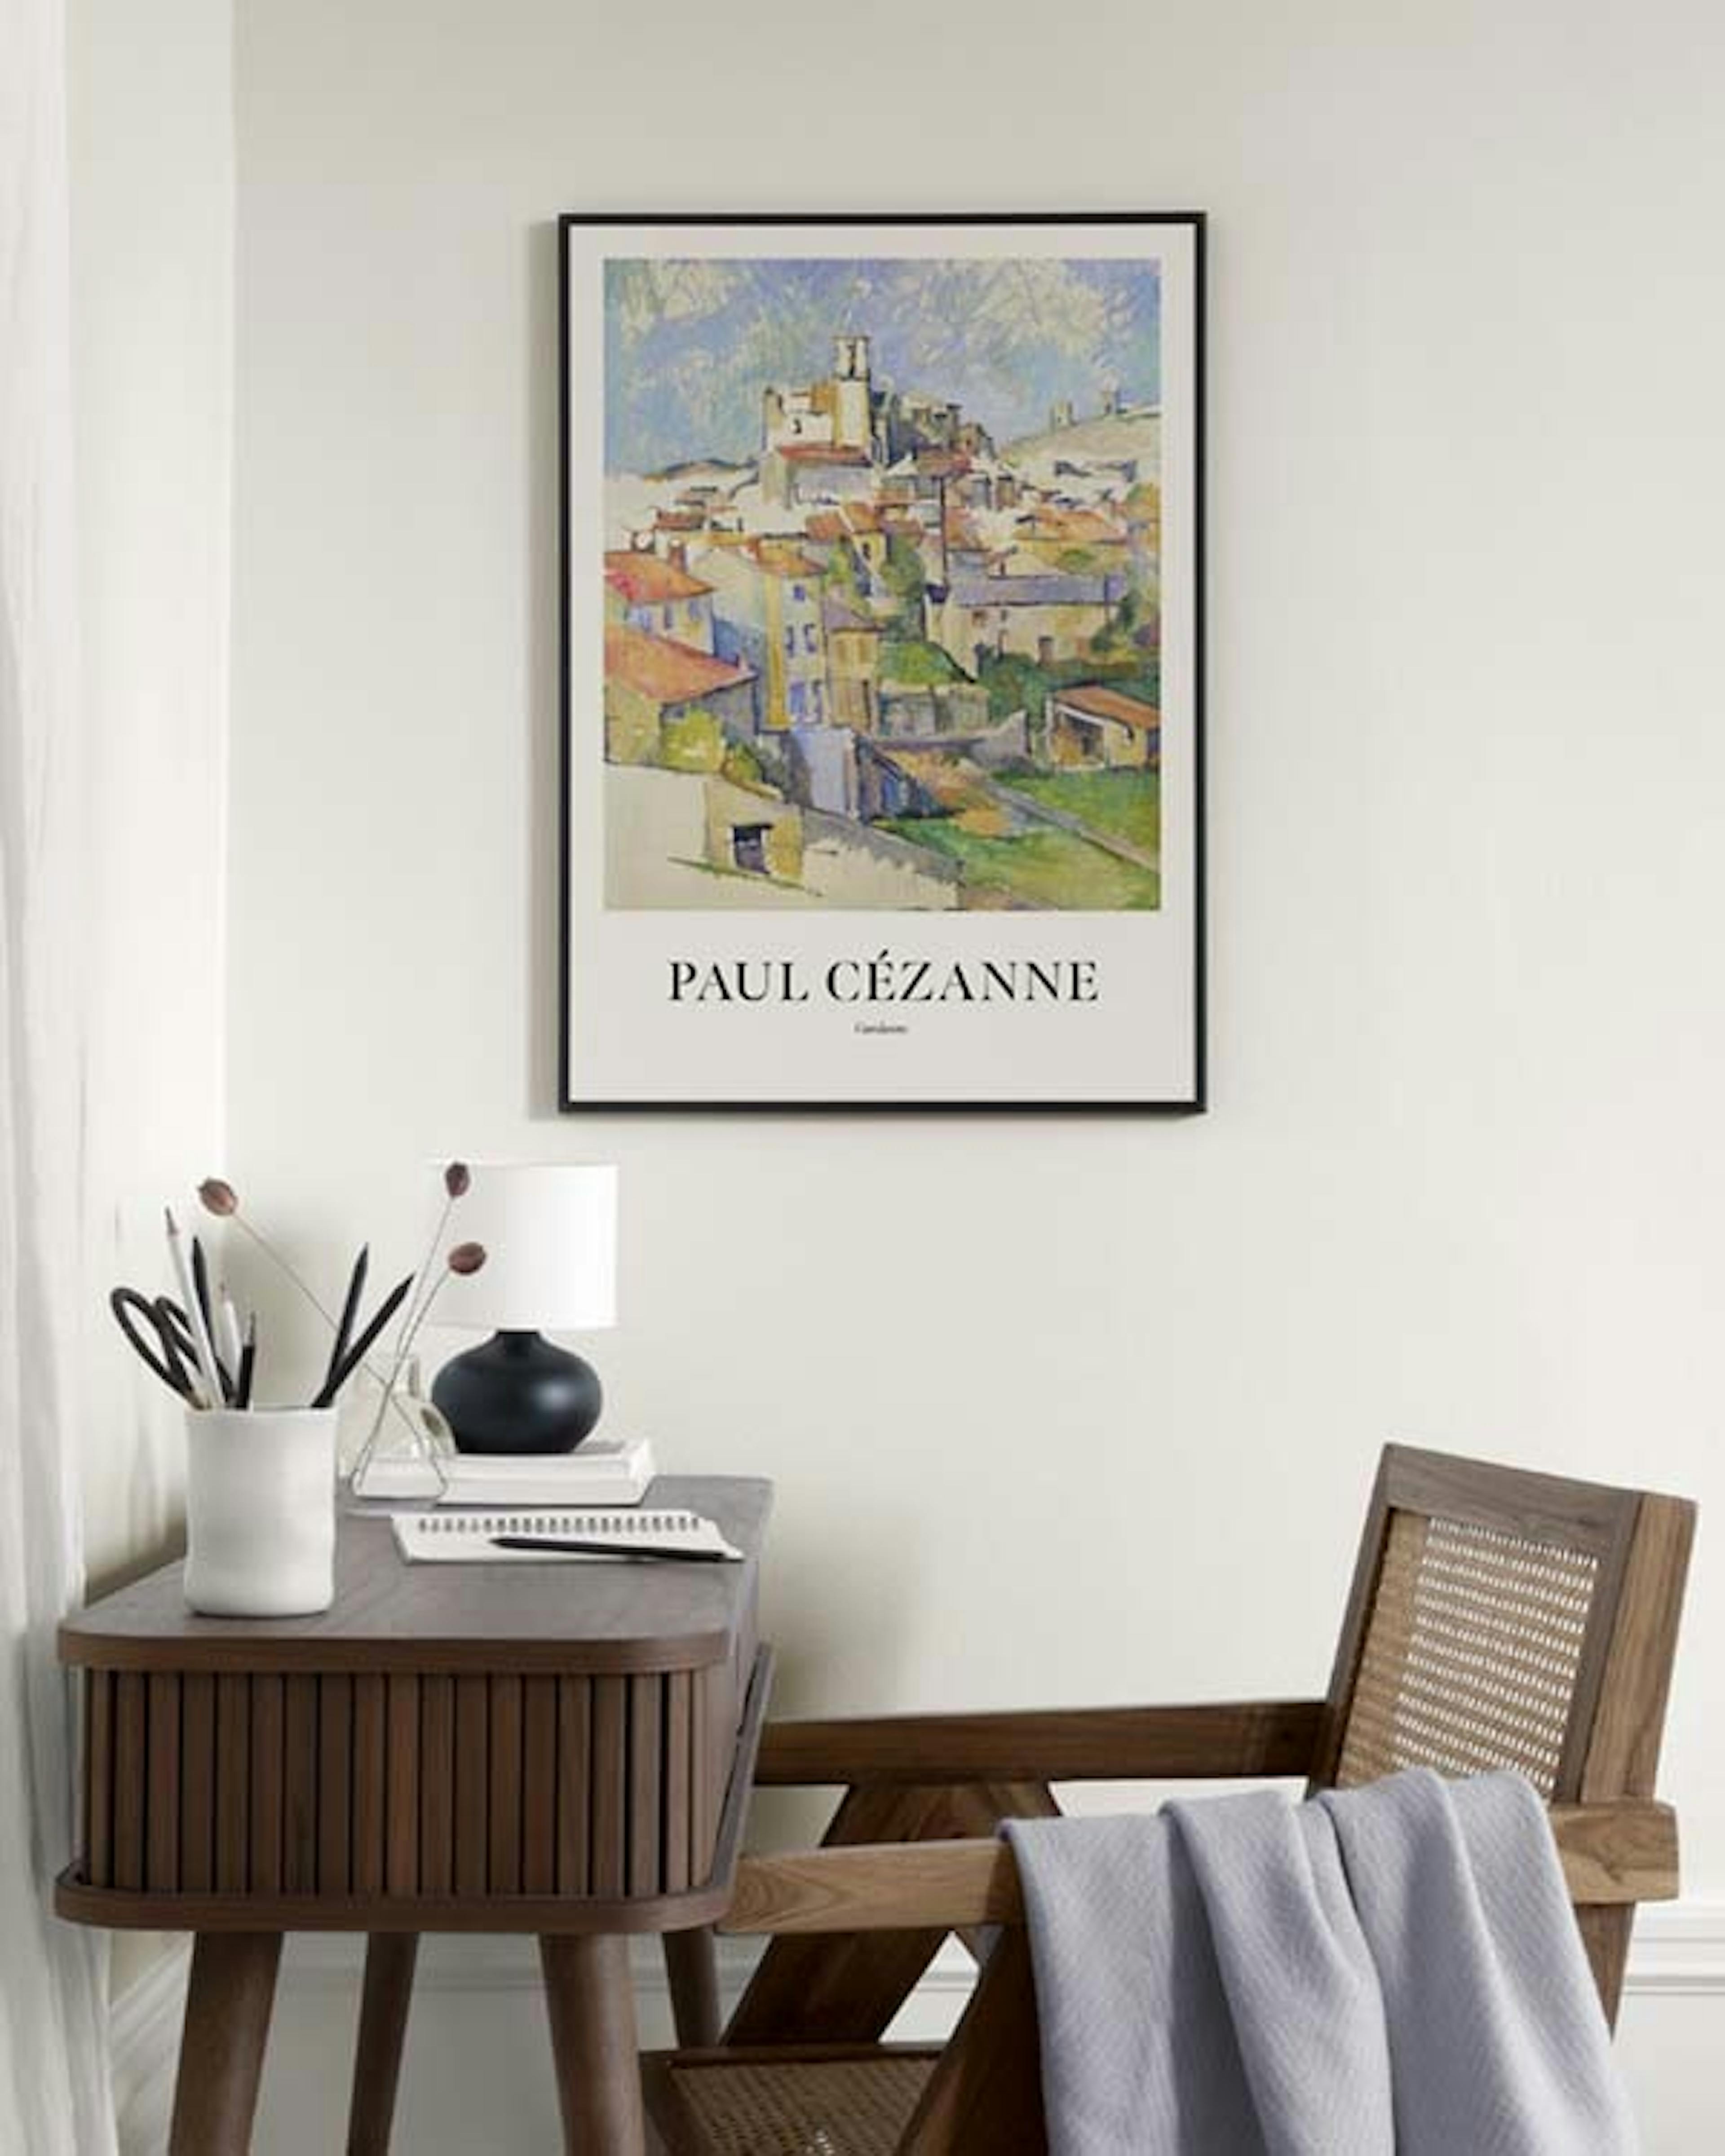 Paul Cézanne - Gardanne Plakat